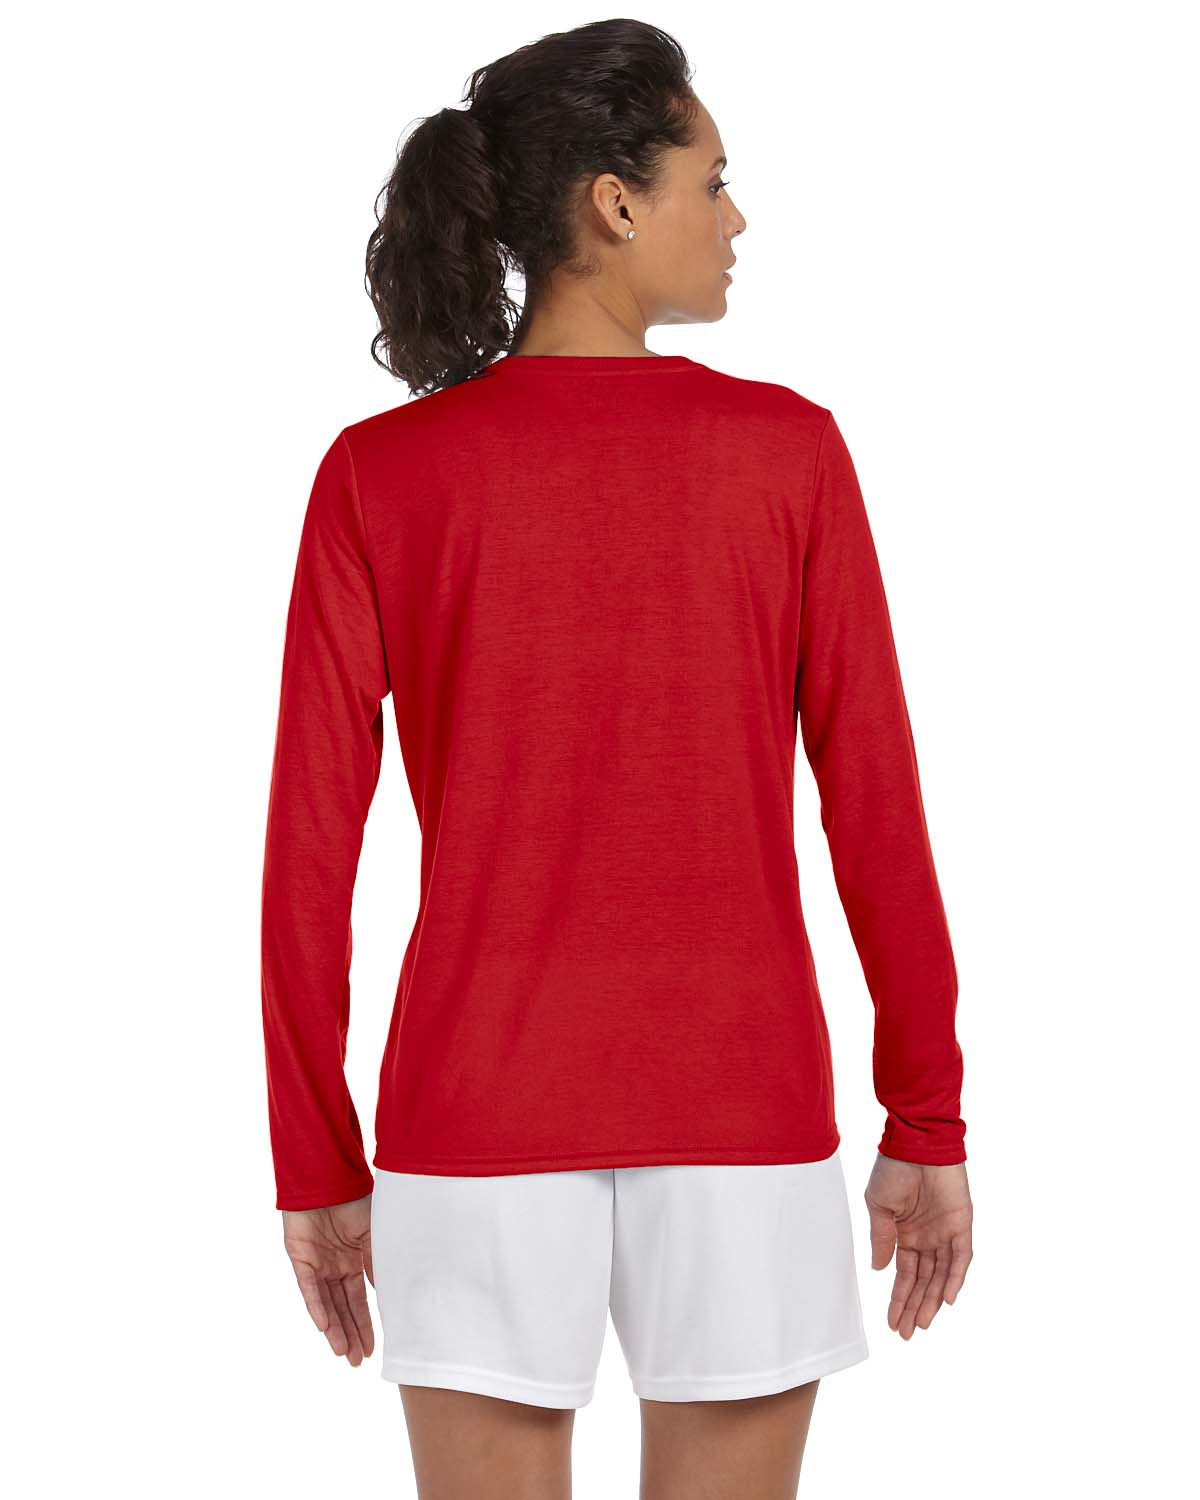 'Gildan G424L Women's Performance Long Sleeve T Shirt'